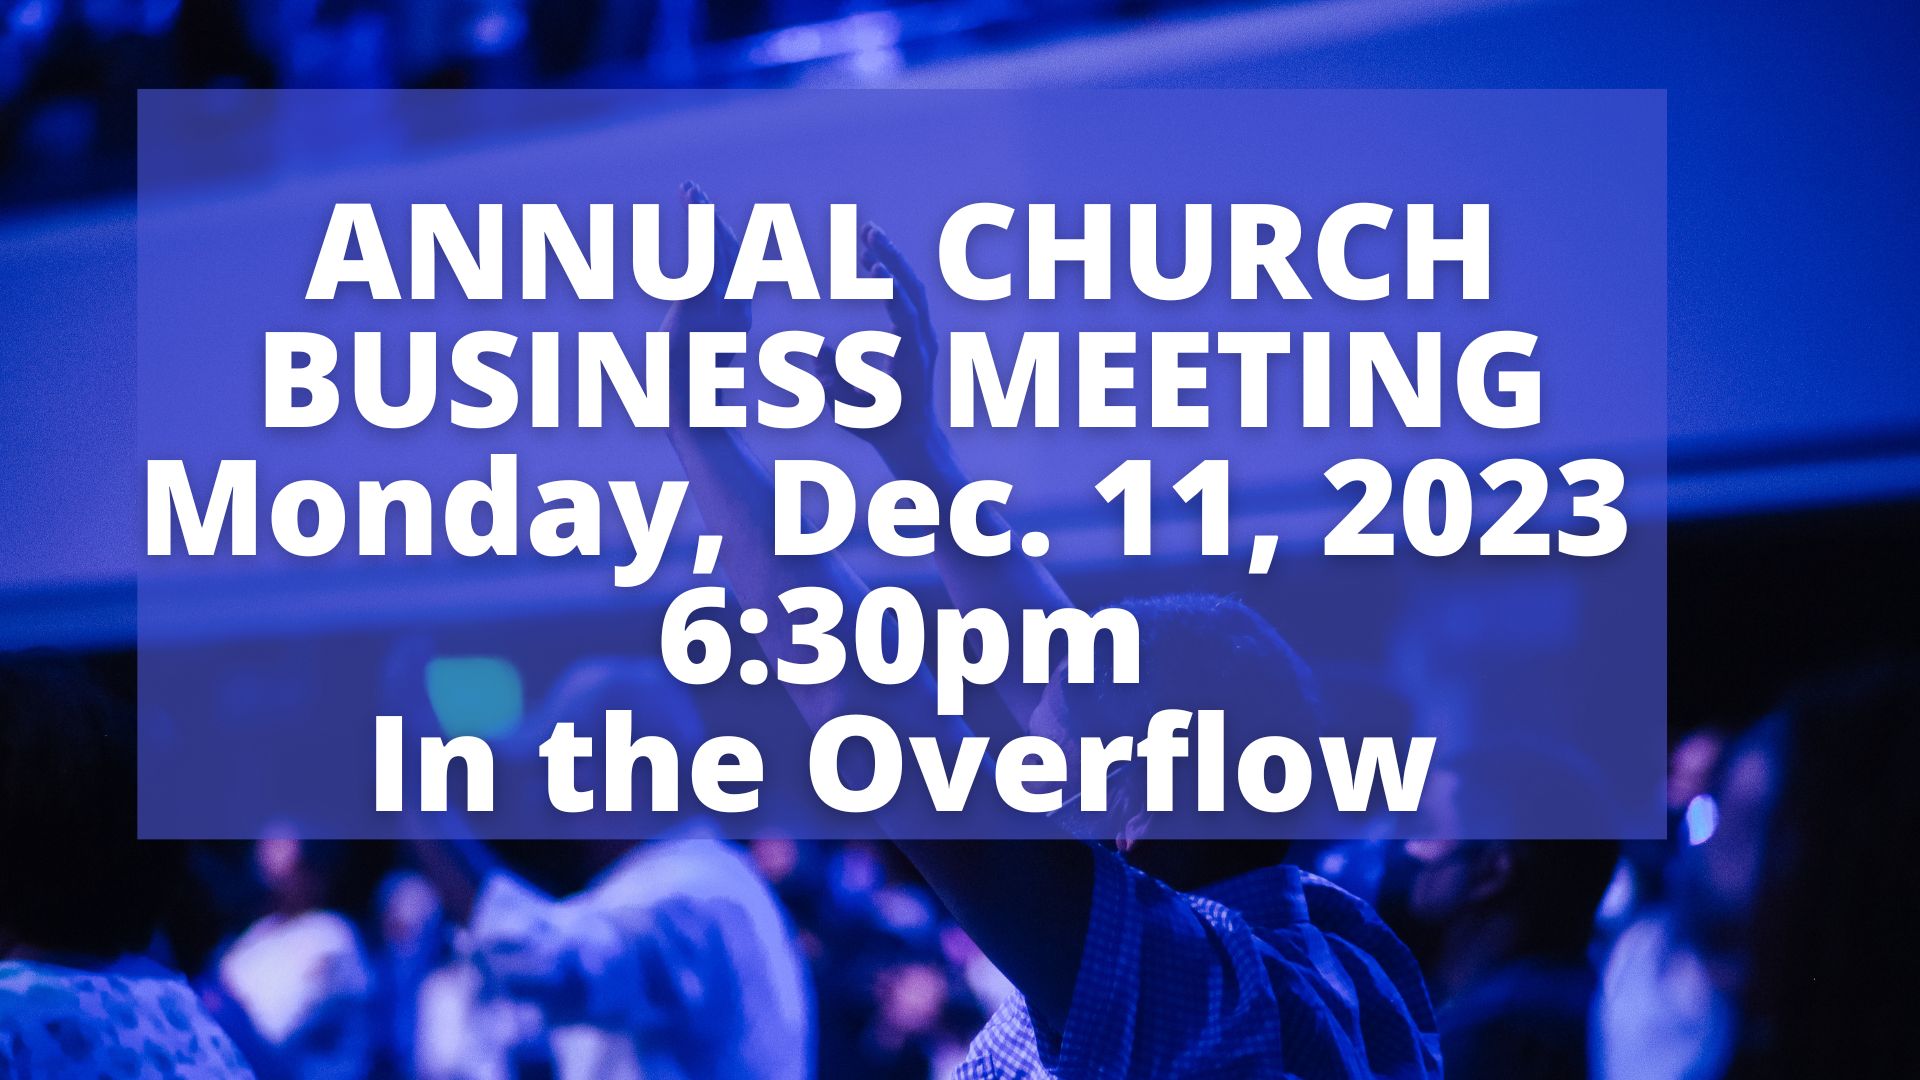 Annual Church Business Meeting | Dec. 9, 2023